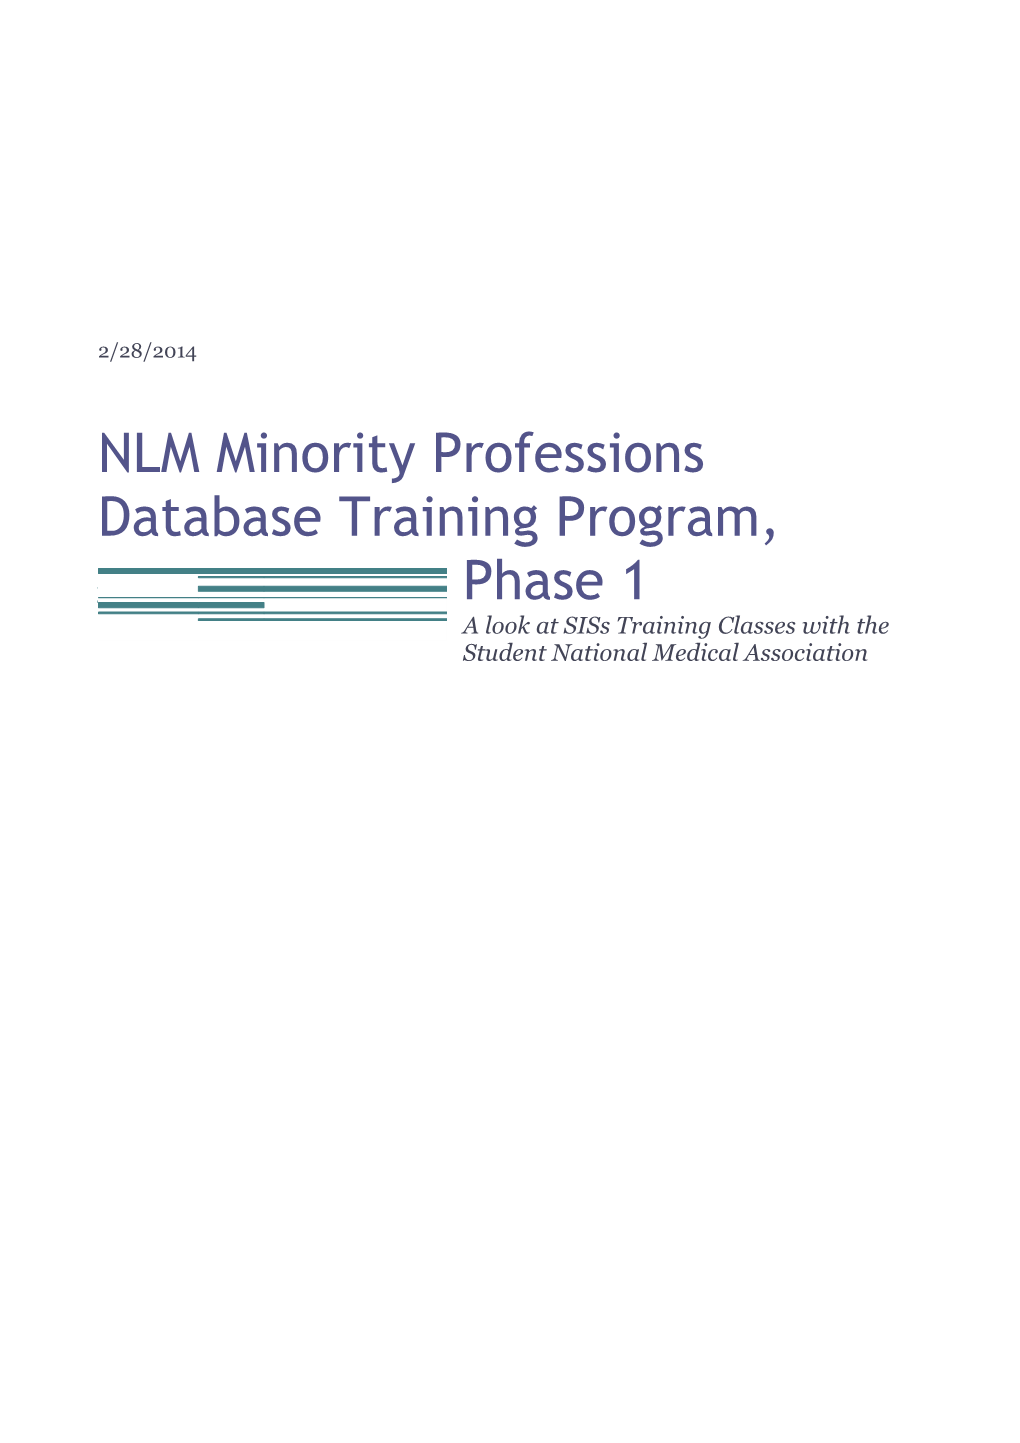 NLM Minority Professions Database Training Program, Phase 1